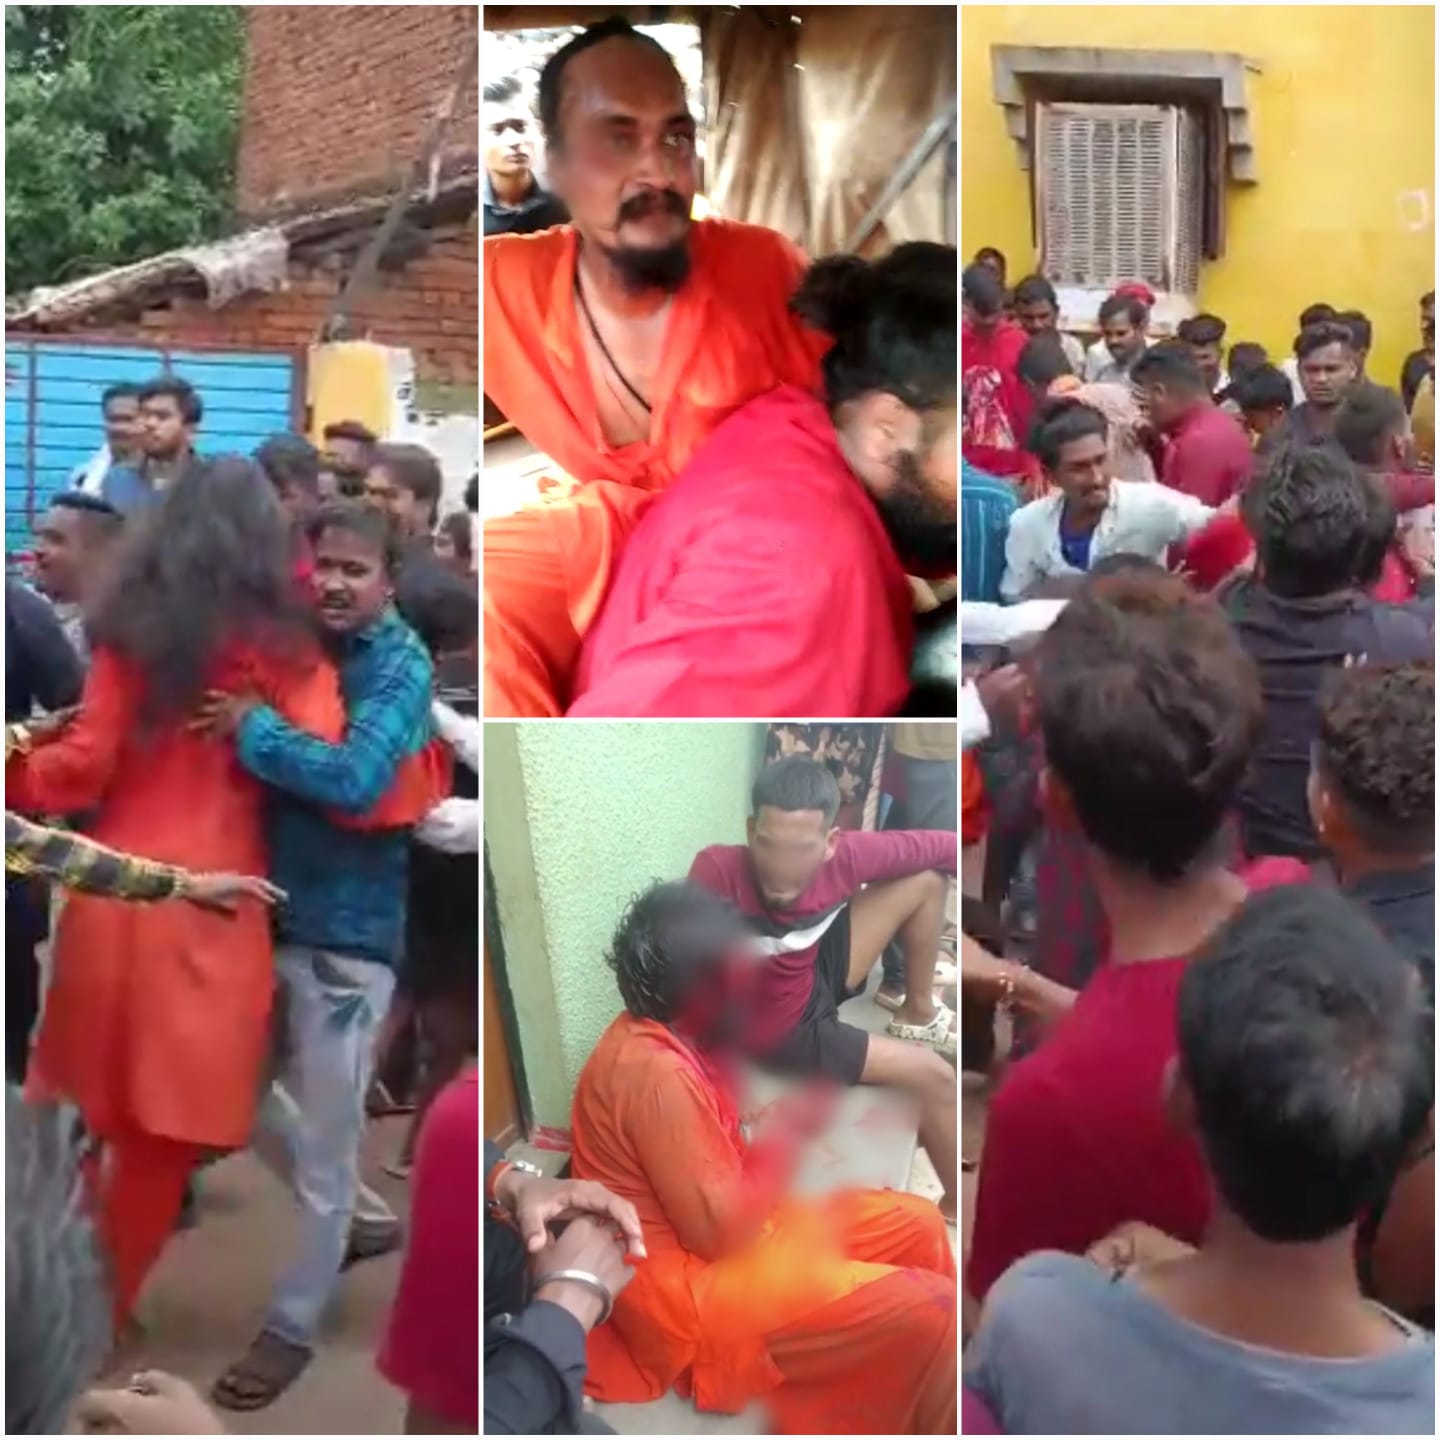 CG VIDEO : छत्तीसगढ़ में यहाँ बच्चा चोरी के शक में तीन साधुओं की बेरहमी से पिटाई, मामला दर्ज, देखें दिल दहला देने वाला विडियो 